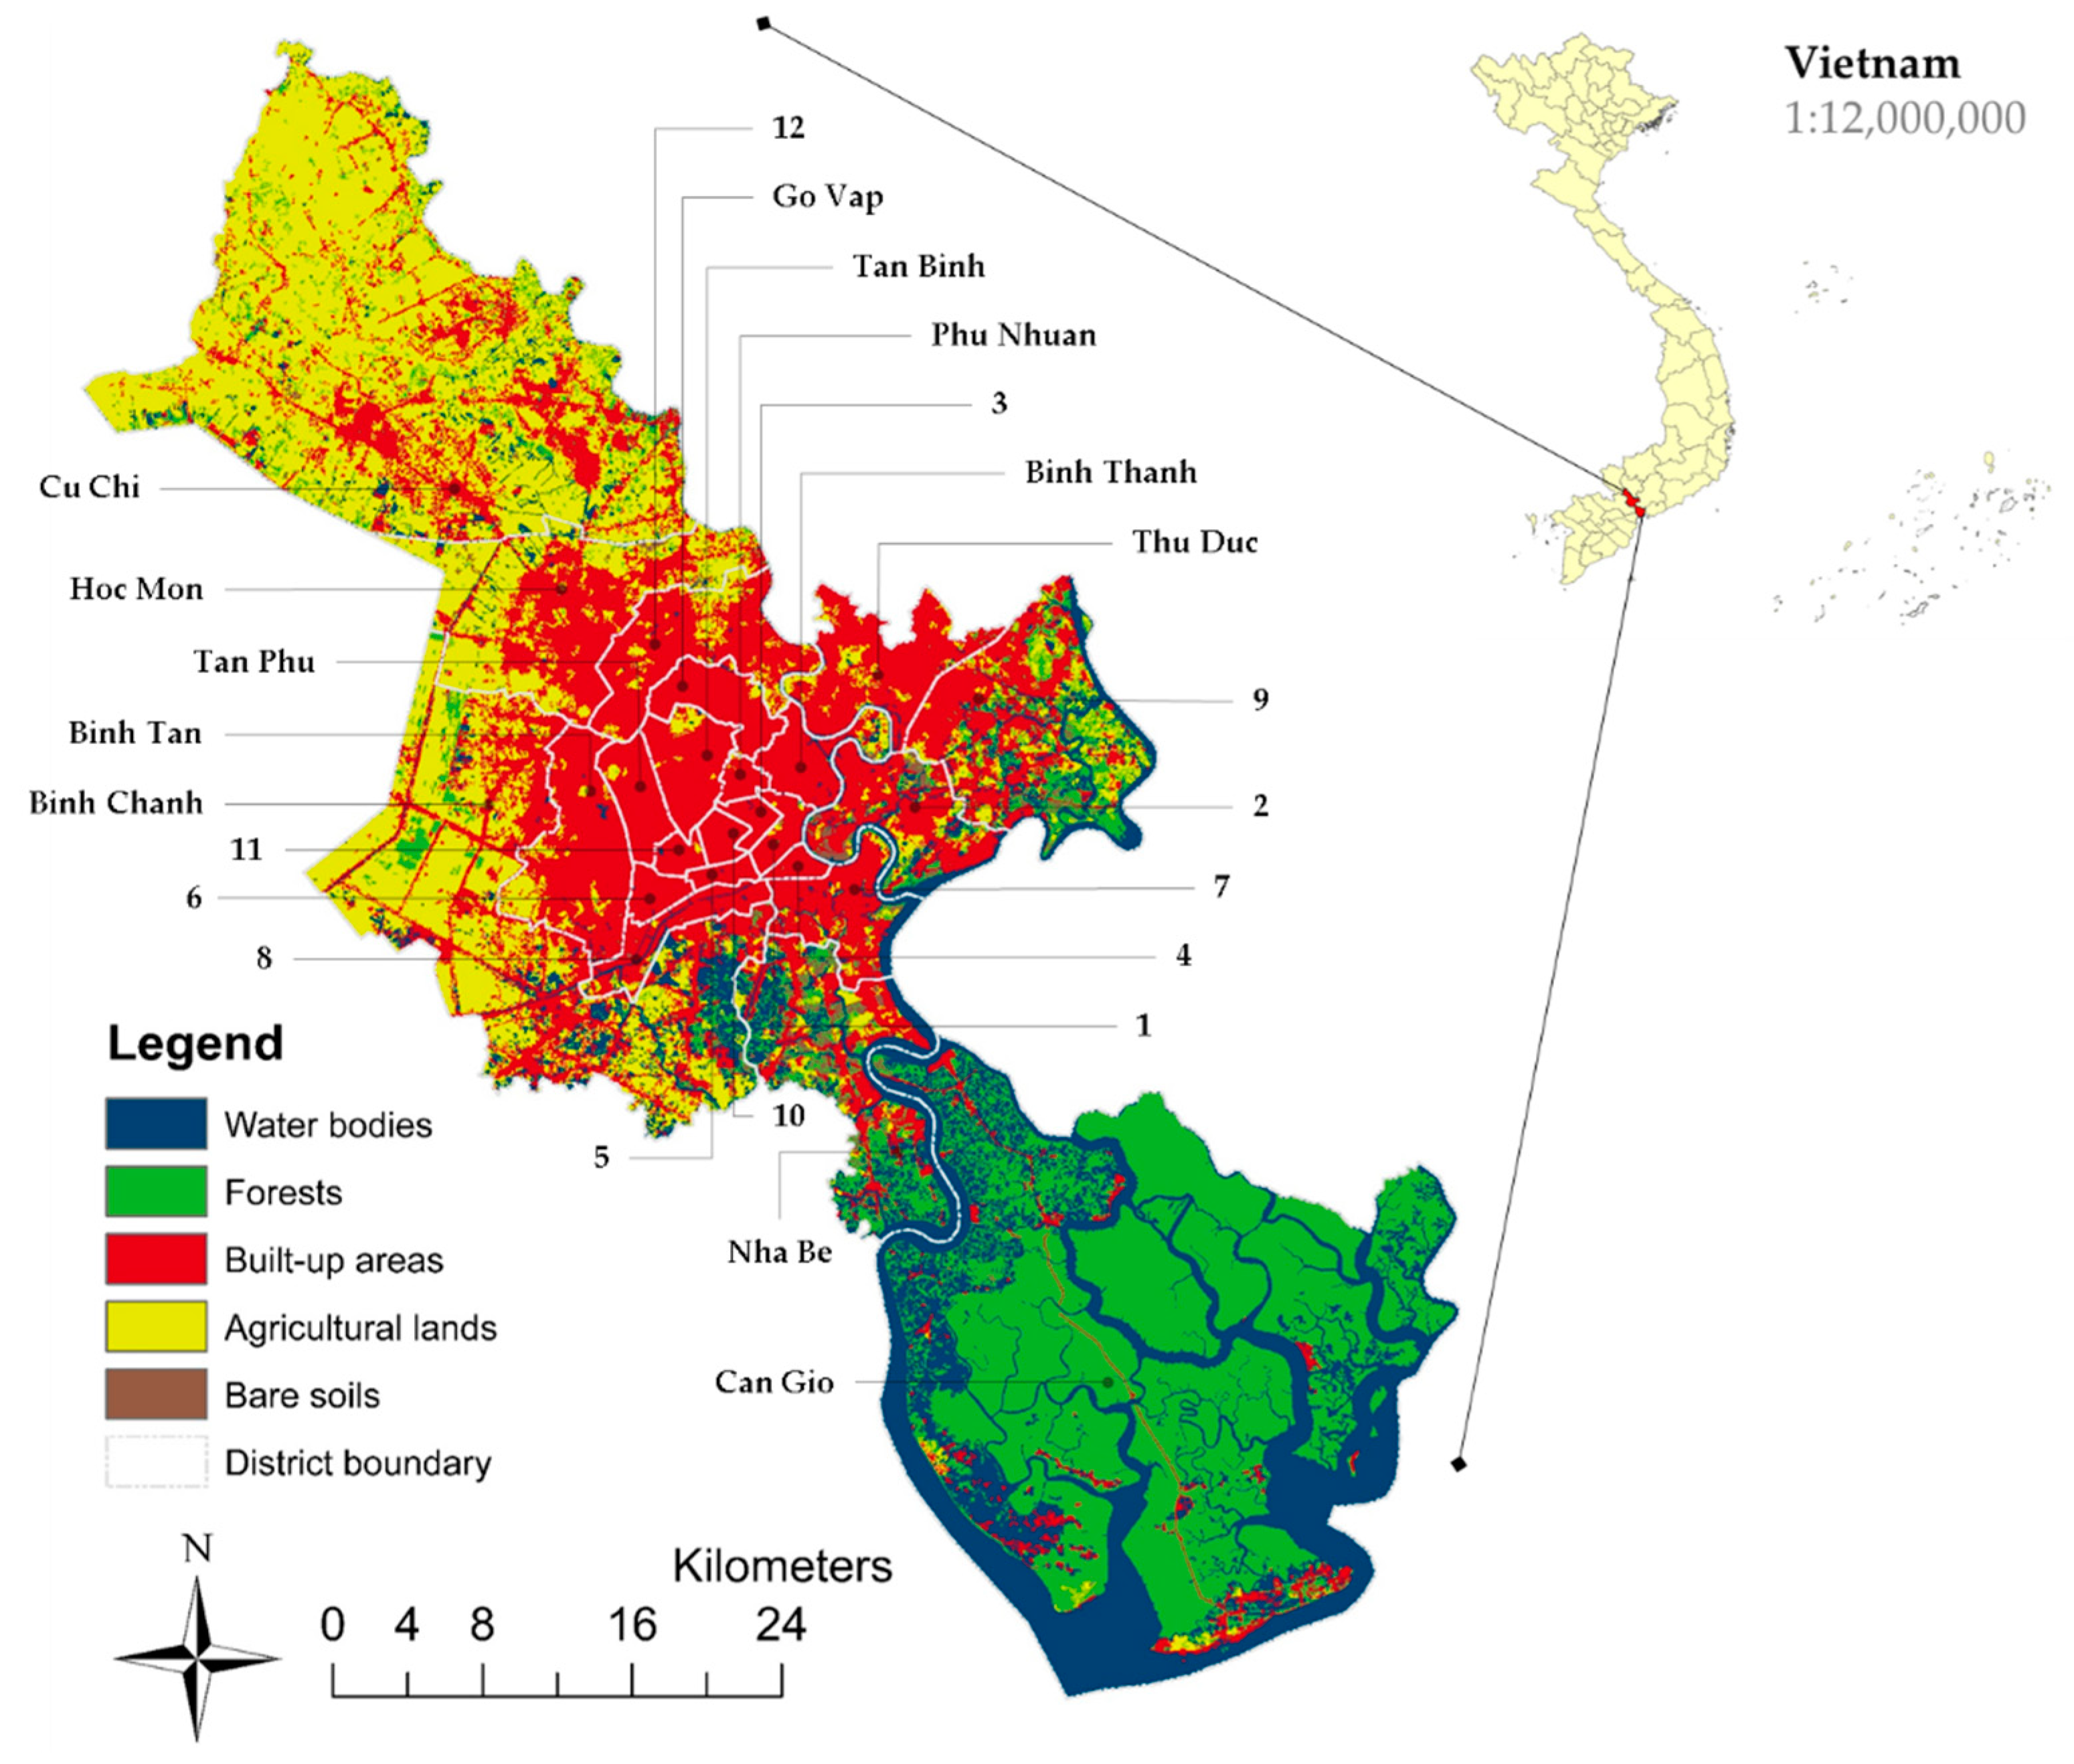 Ho Chi Minh City, Location, History, Map, & Facts